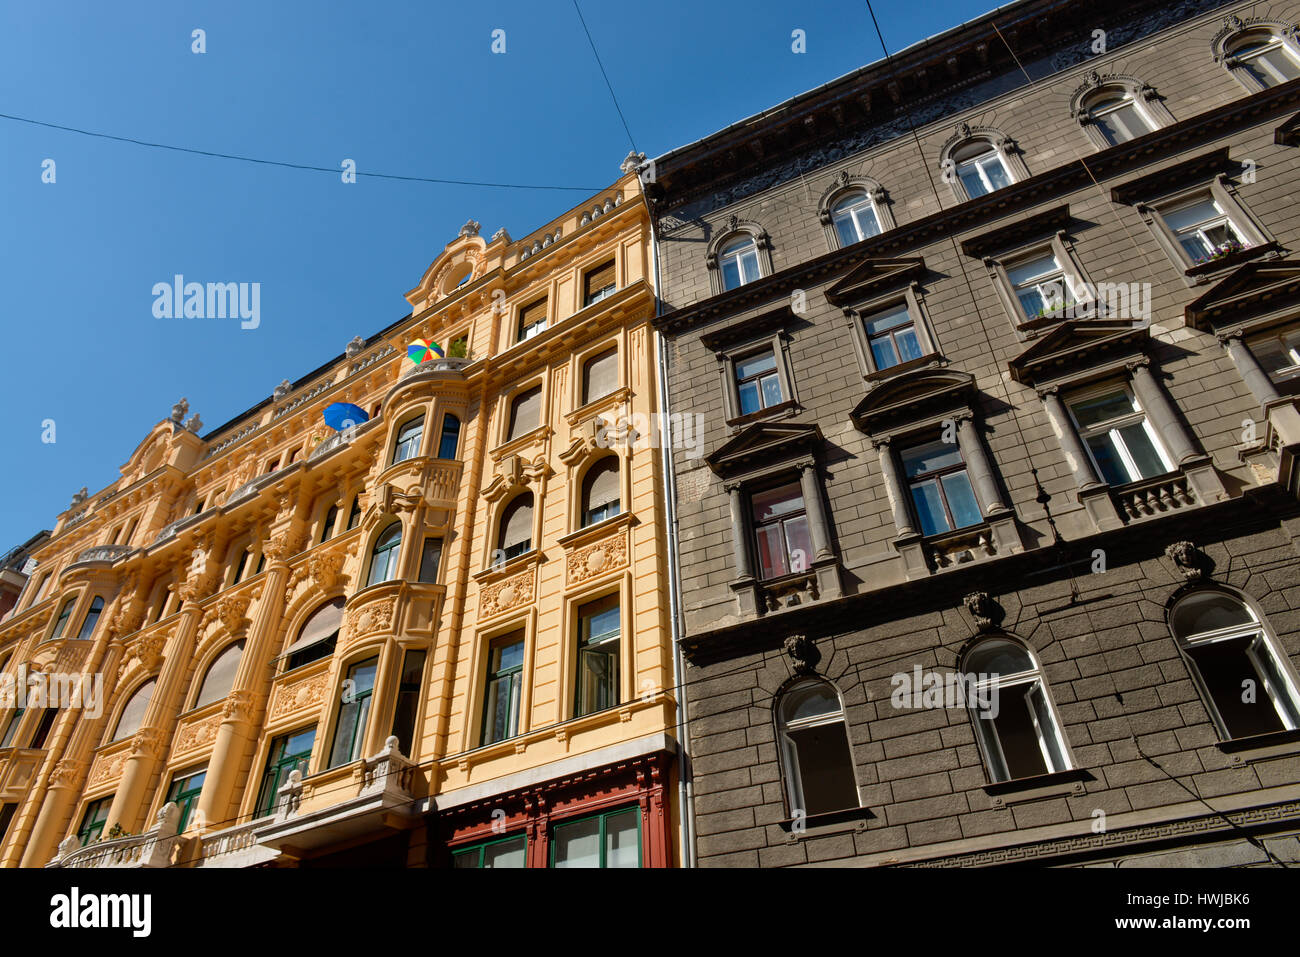 Altbau, Juedisches Viertel, Budapest, Ungarn Stock Photo